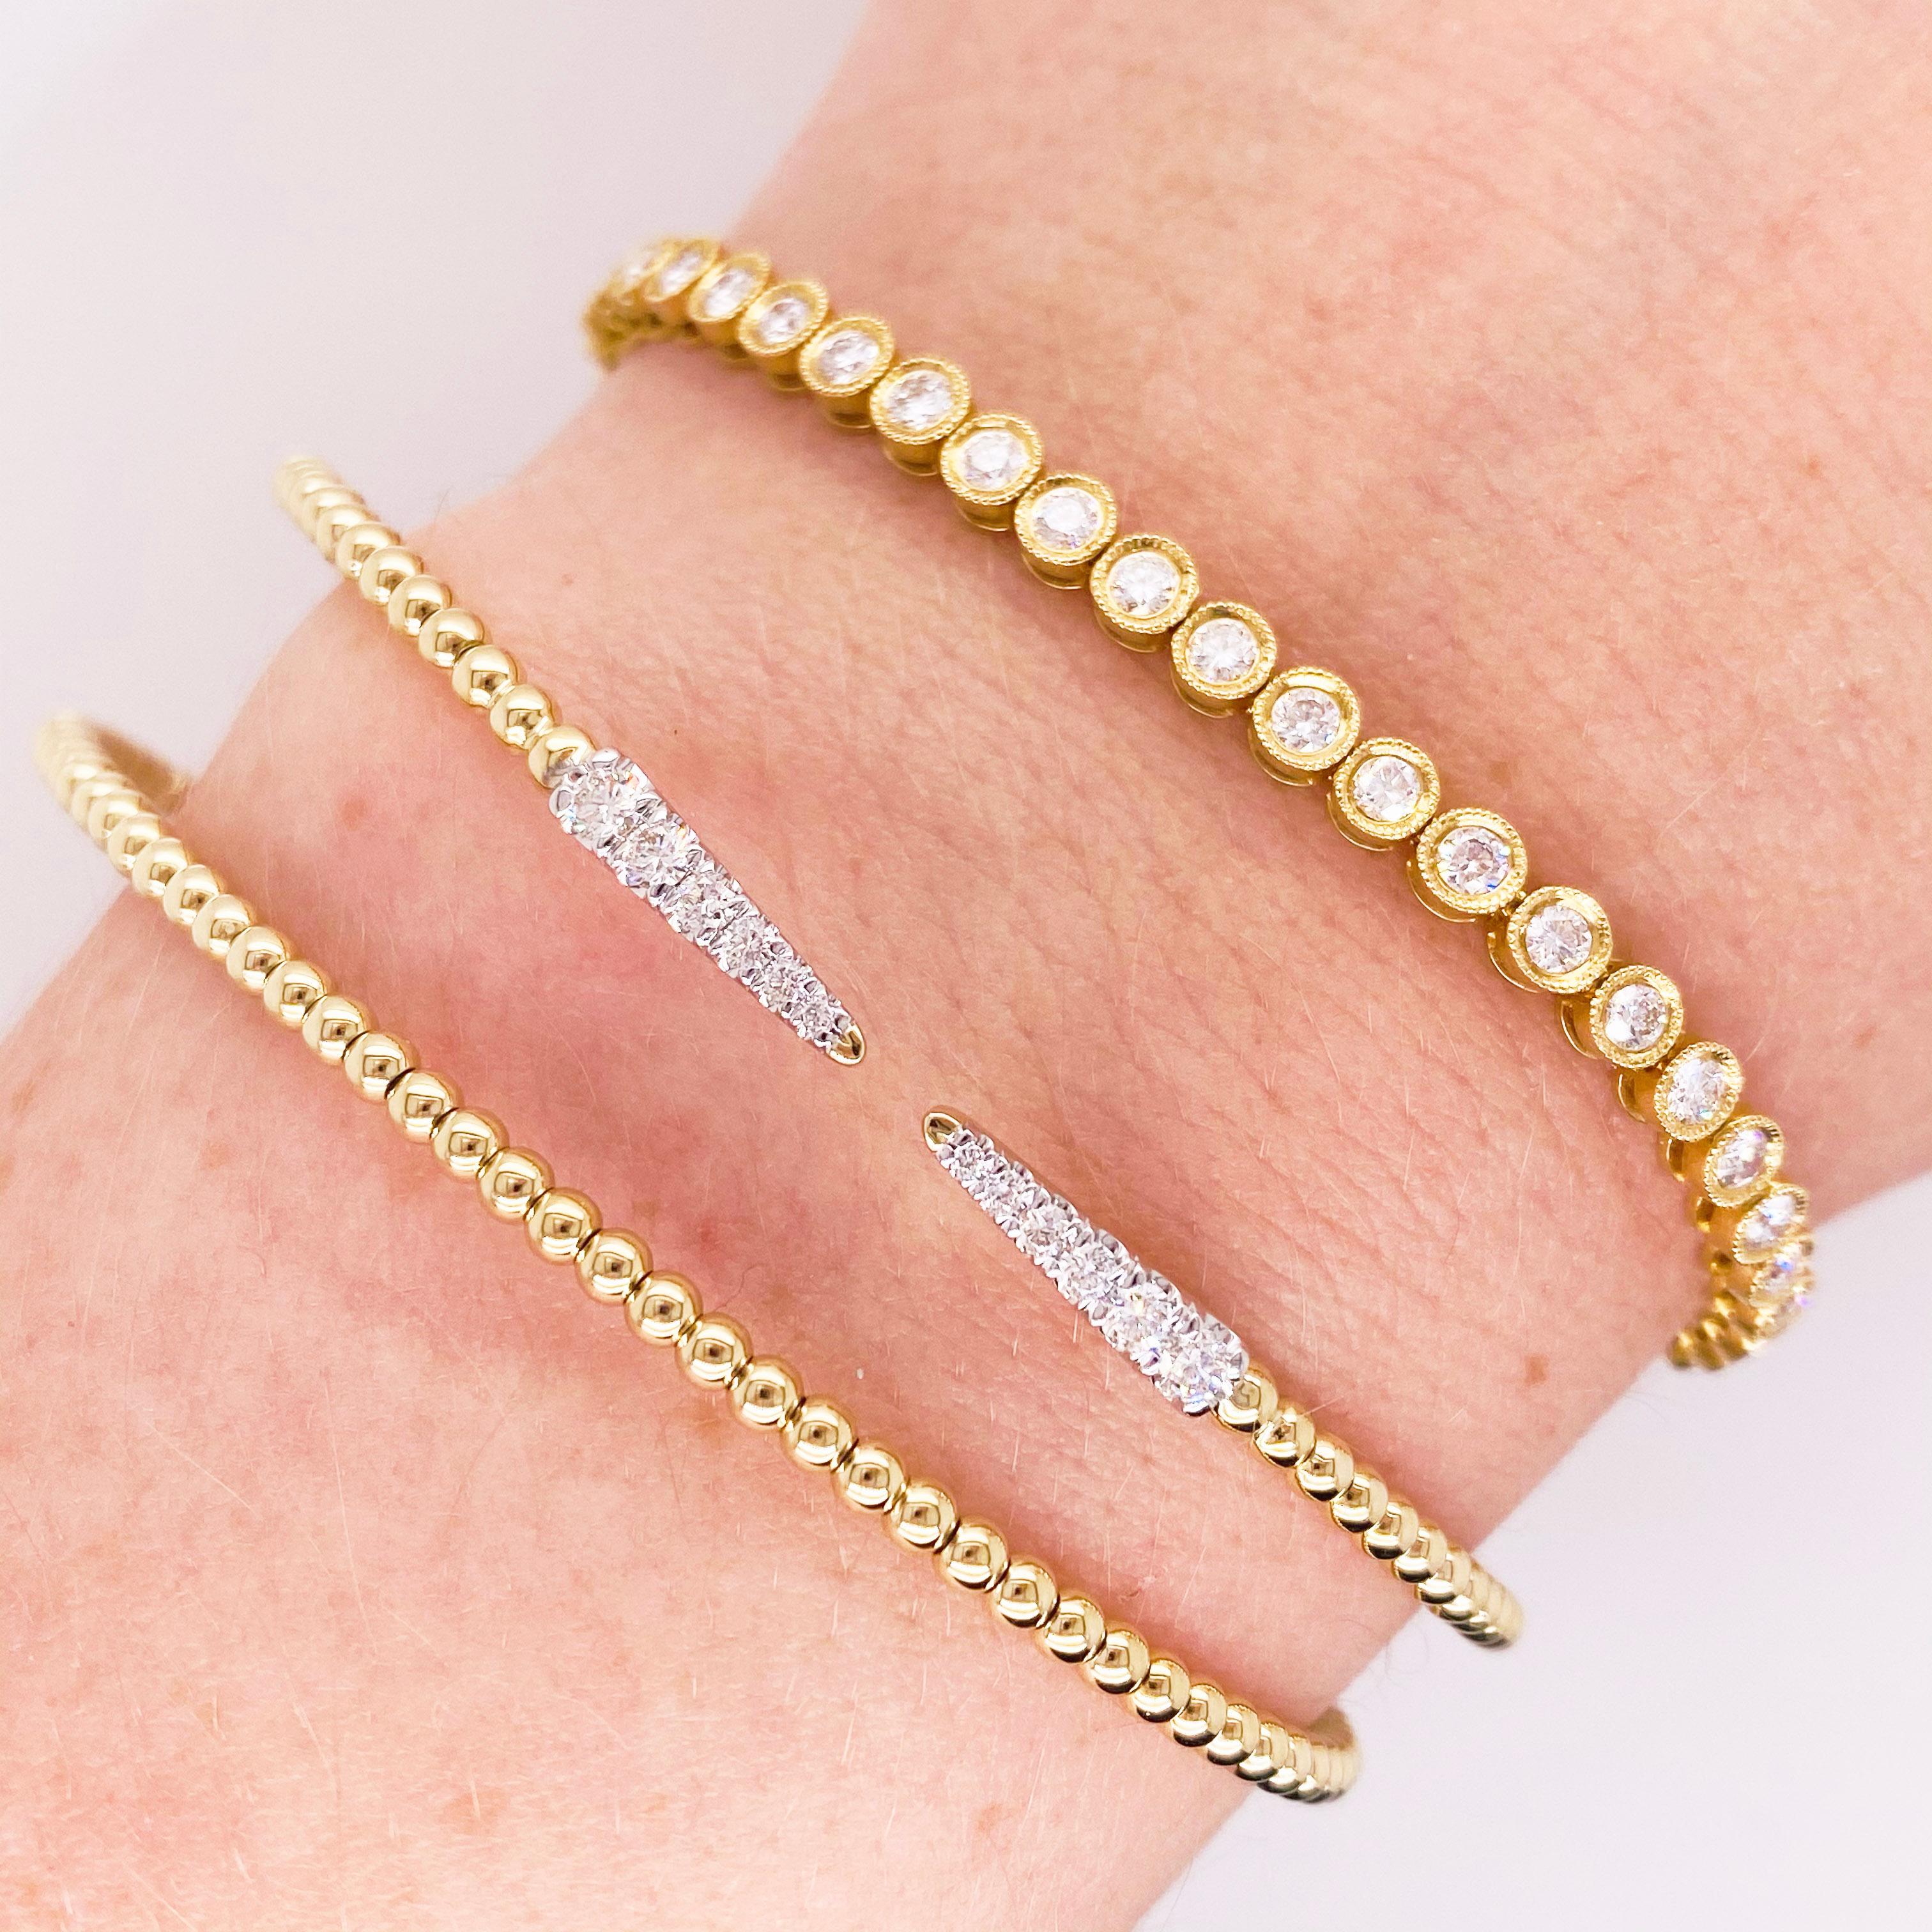 Offene Armspange aus 14 Karat Gelbgold mit einzigartigem, flexiblem Design! Das Armband hat ein offenes Design mit einer Bujukan-Perle als Abschluss. Es ist ein leichtes, edles Schmuckstück, das Sie zu jeder Gelegenheit beglücken wird! Dieses